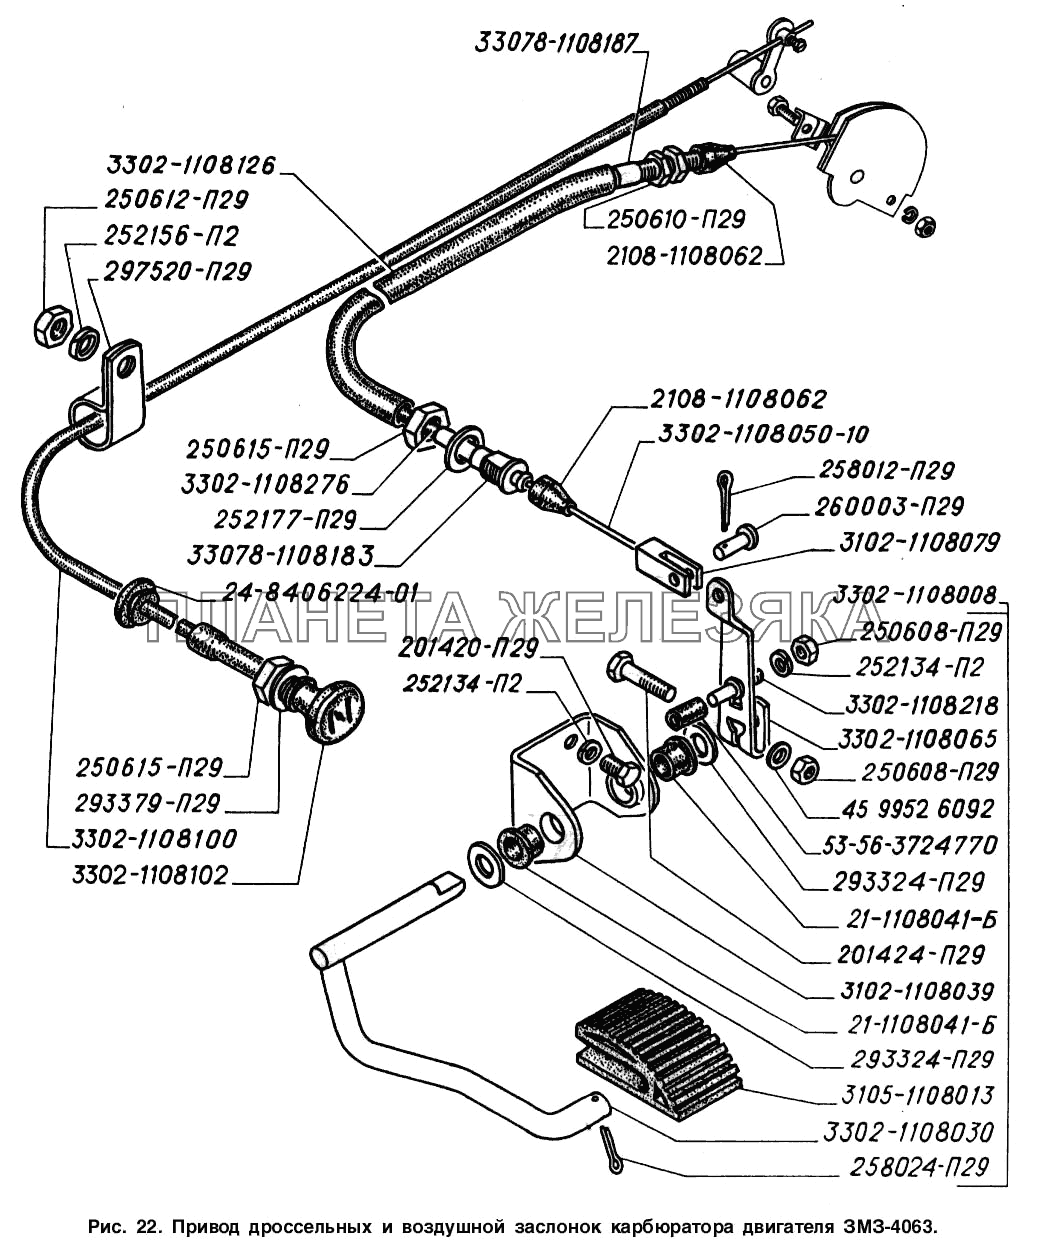 Привод дроссельных и воздушной заслонок карбюратора двигателя ЗМЗ-4063 ГАЗ-2217 (Соболь)